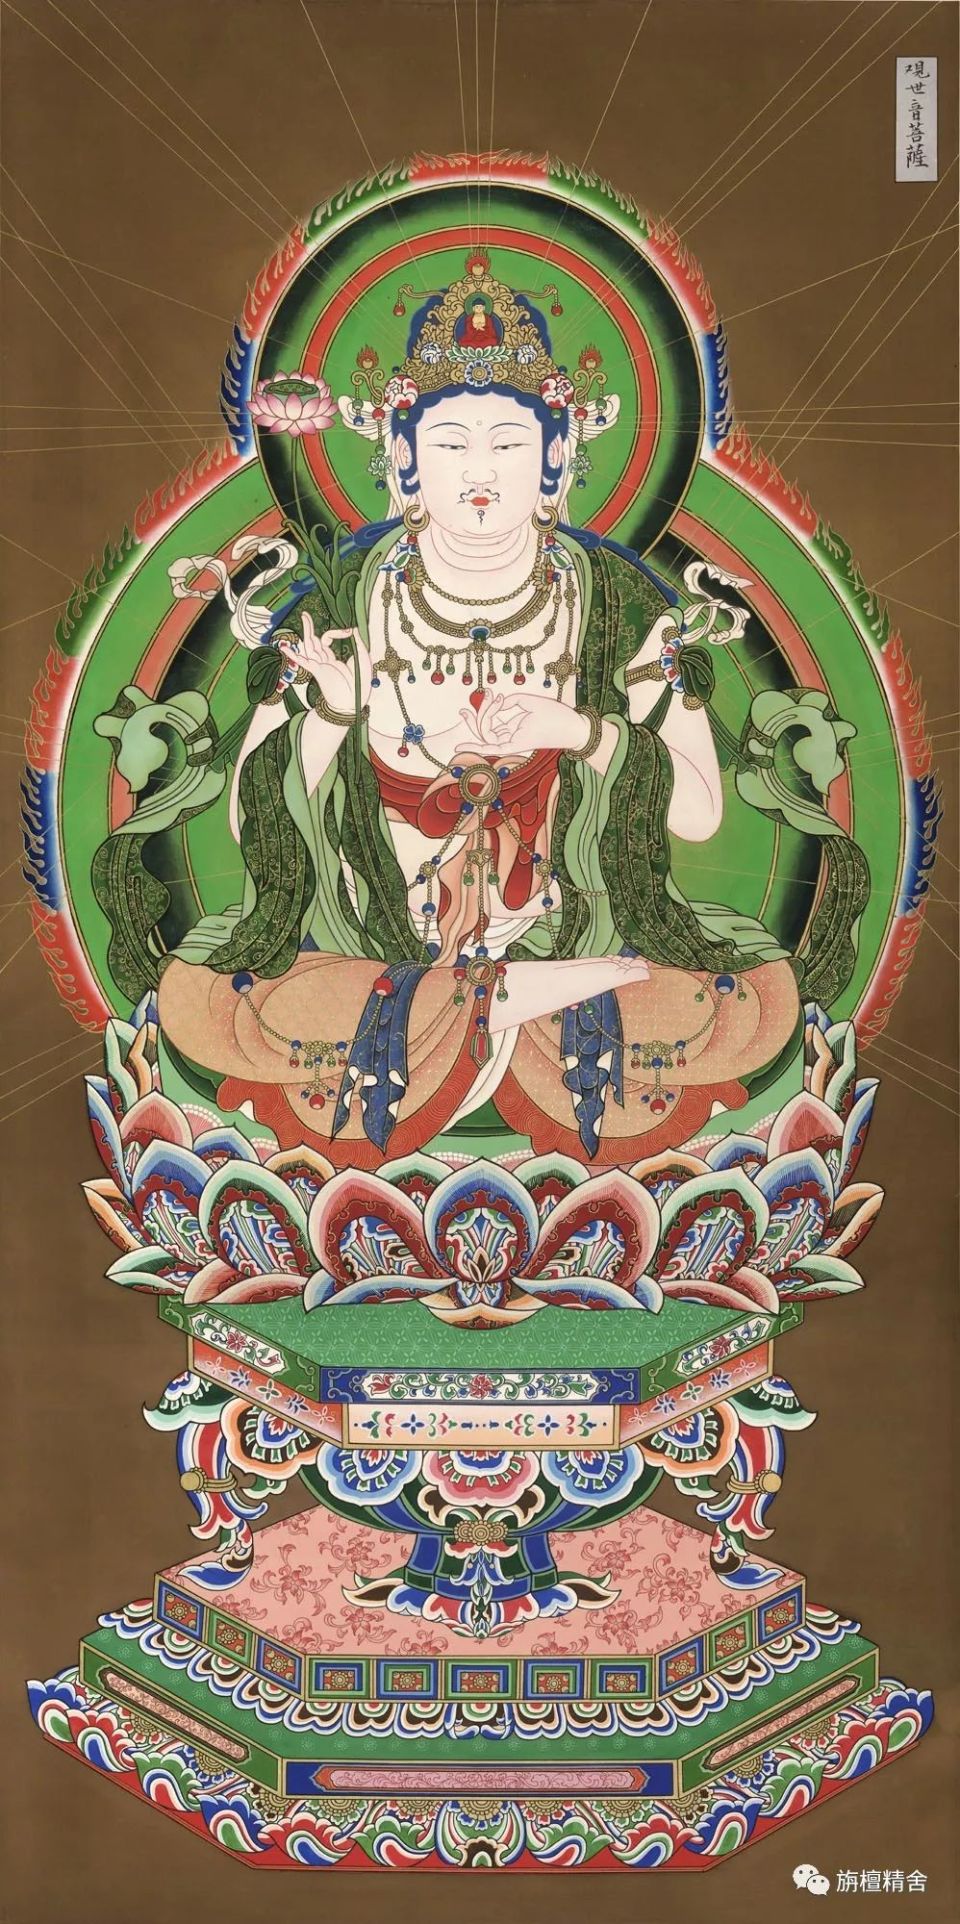 佛教八大菩萨画像,精美无比